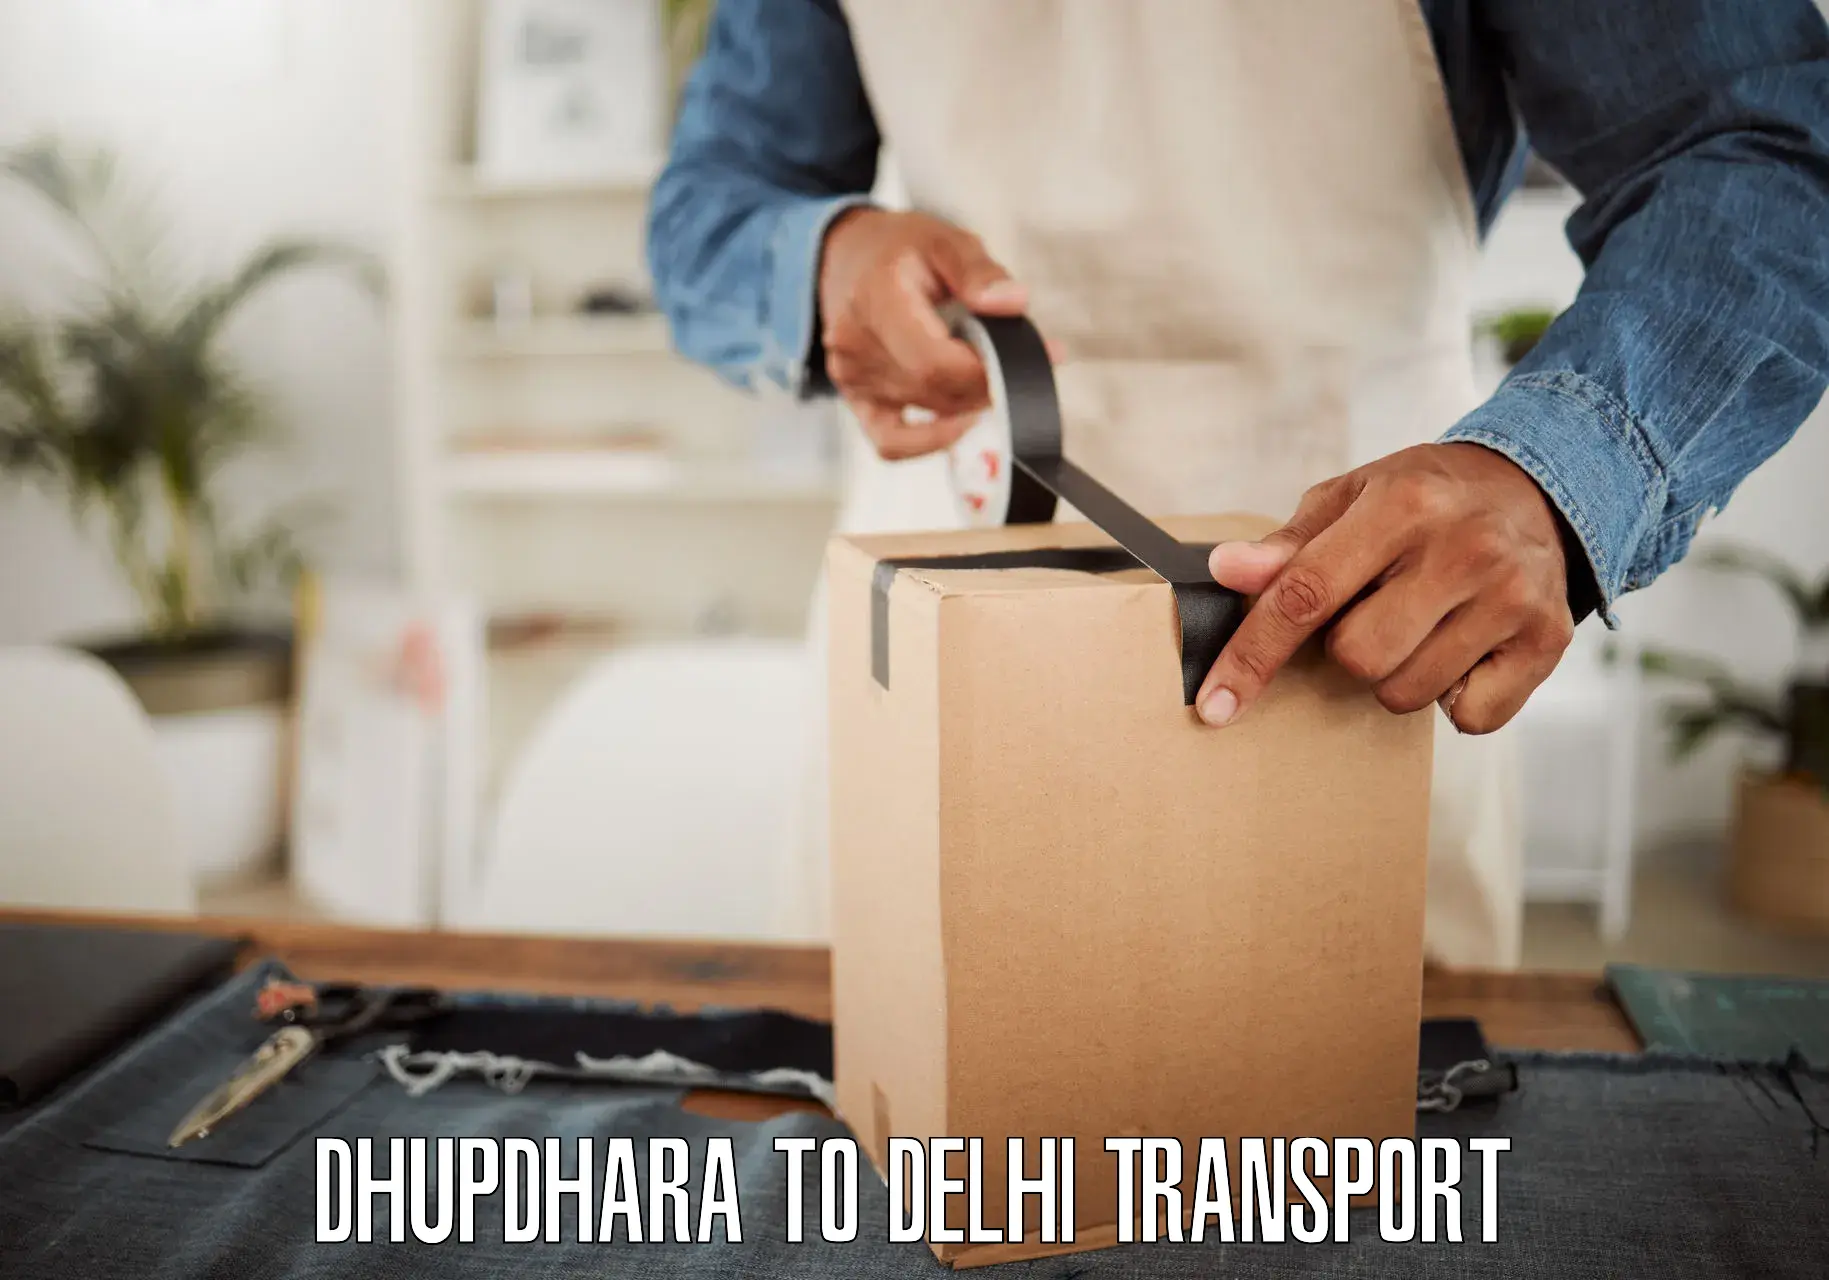 Express transport services Dhupdhara to Burari